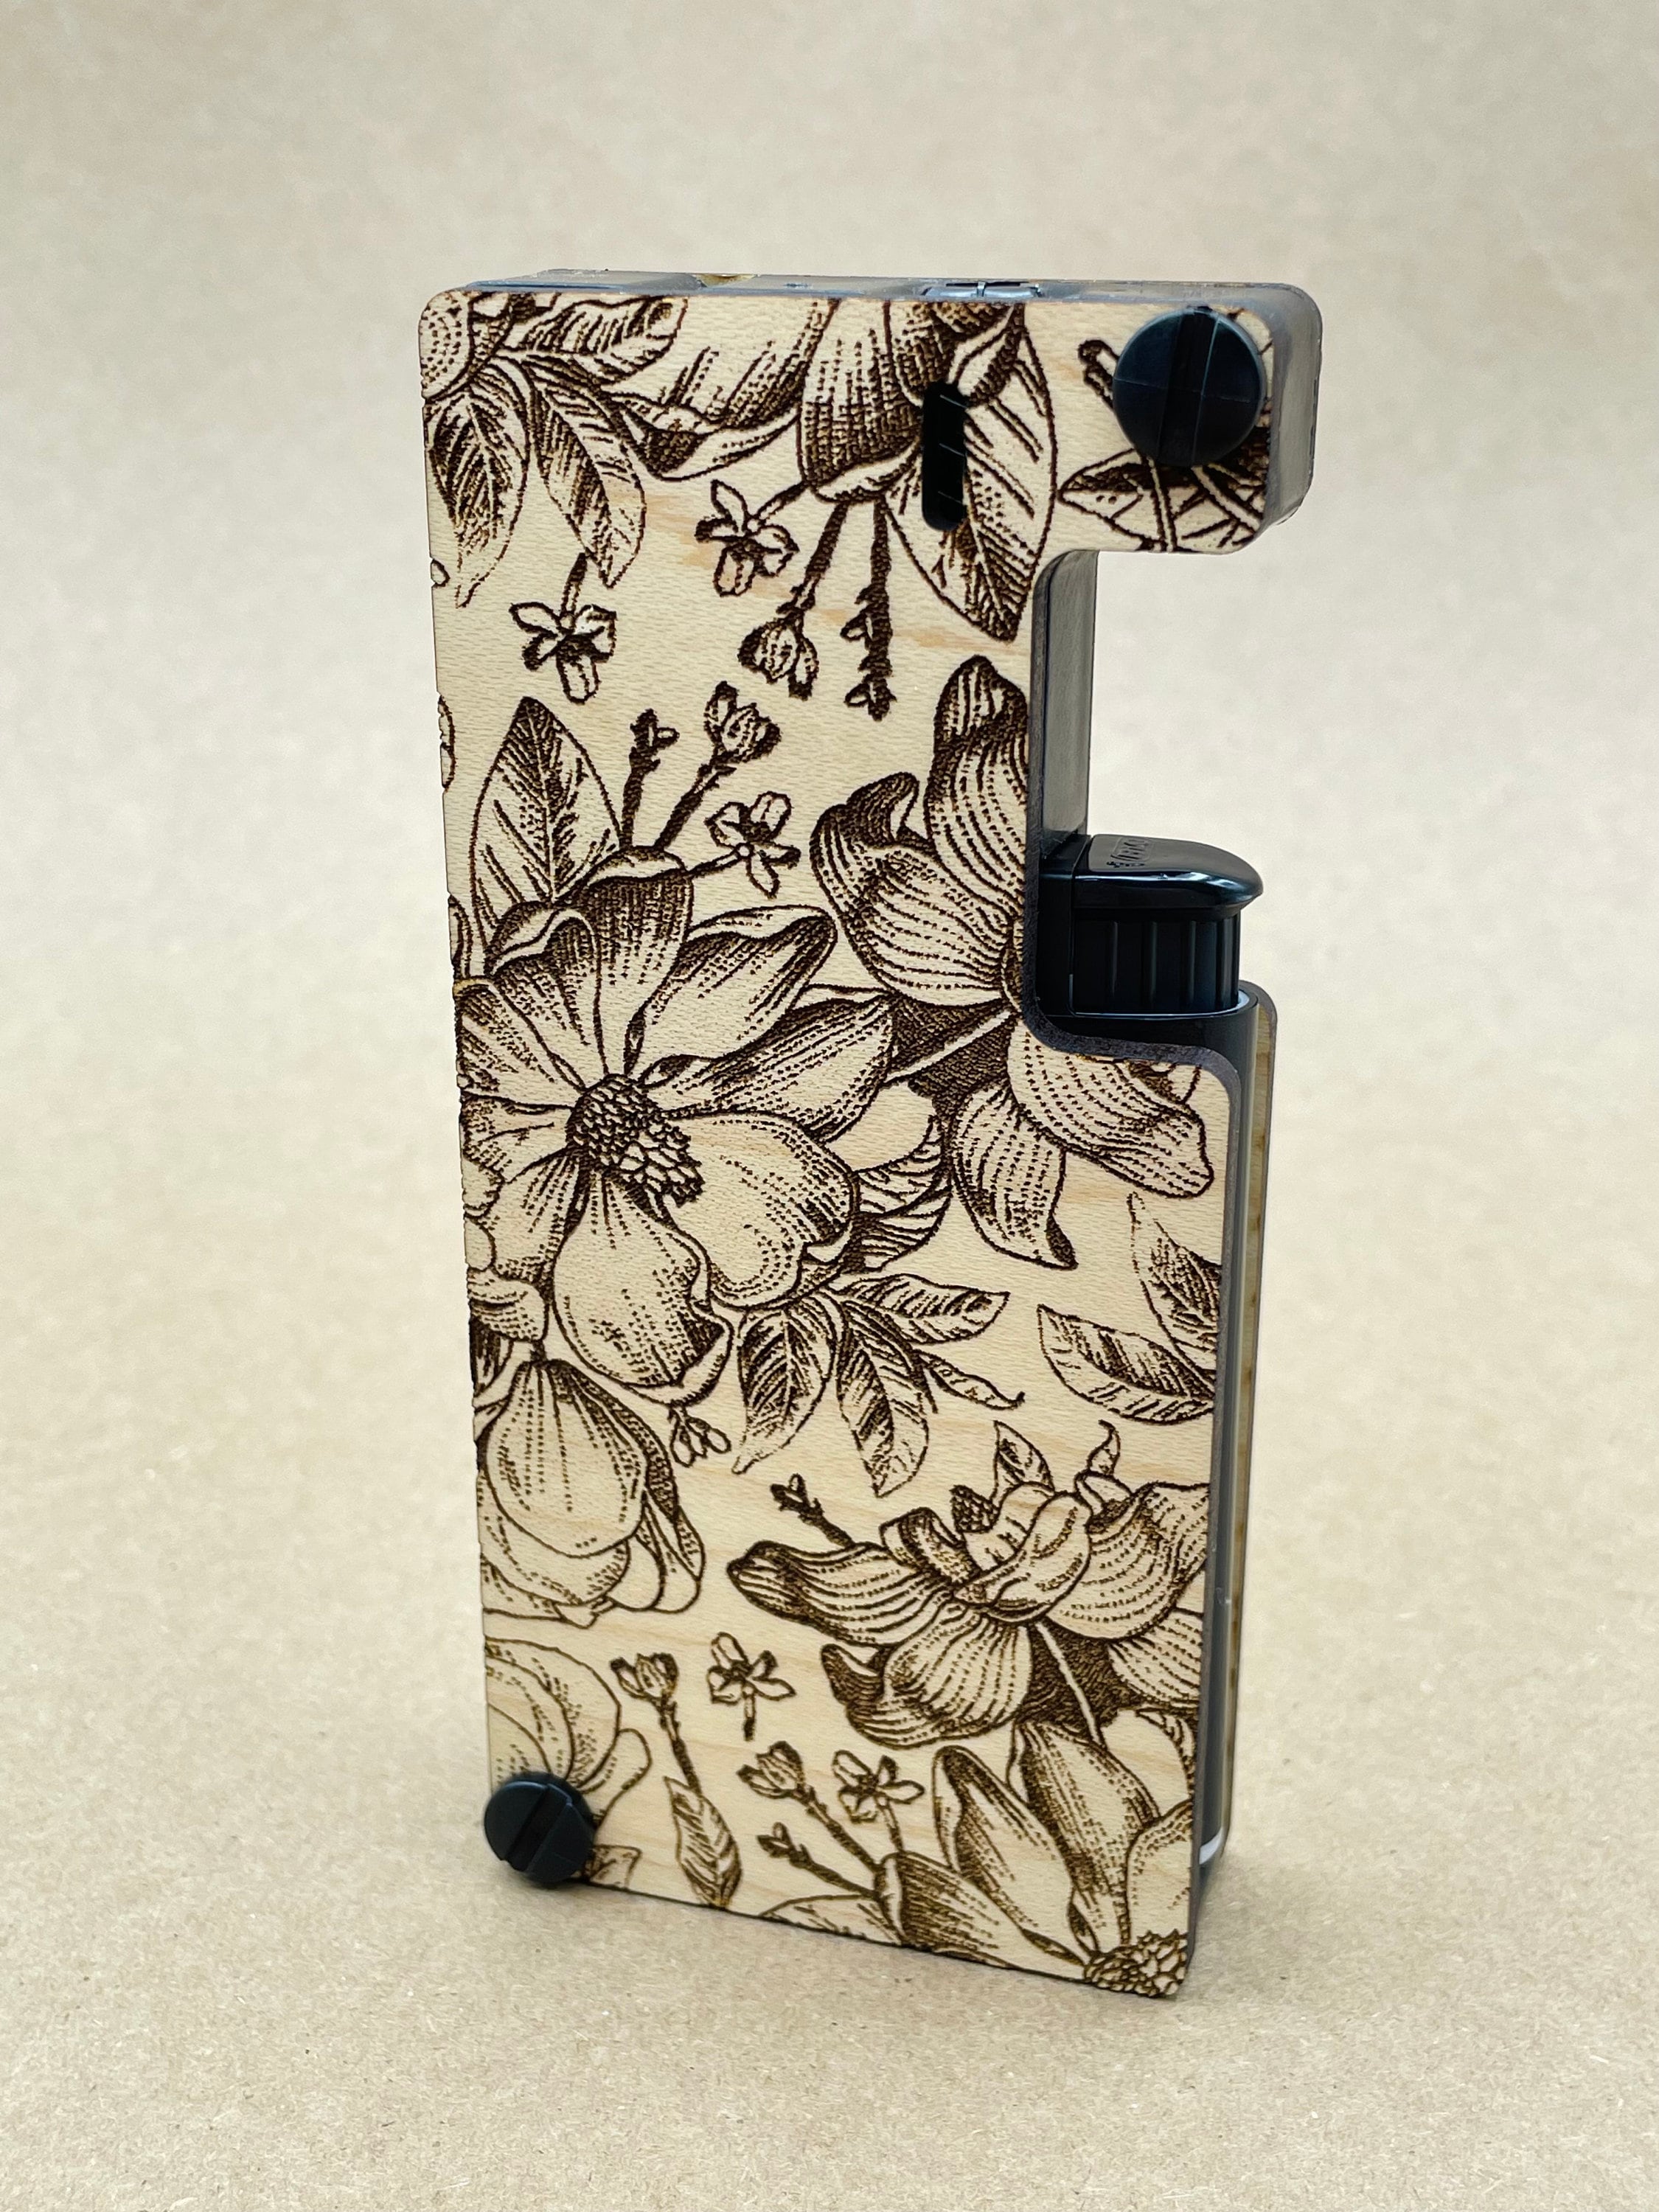 Hit Kit Flamethrower. Portable Joint + Lighter Case.